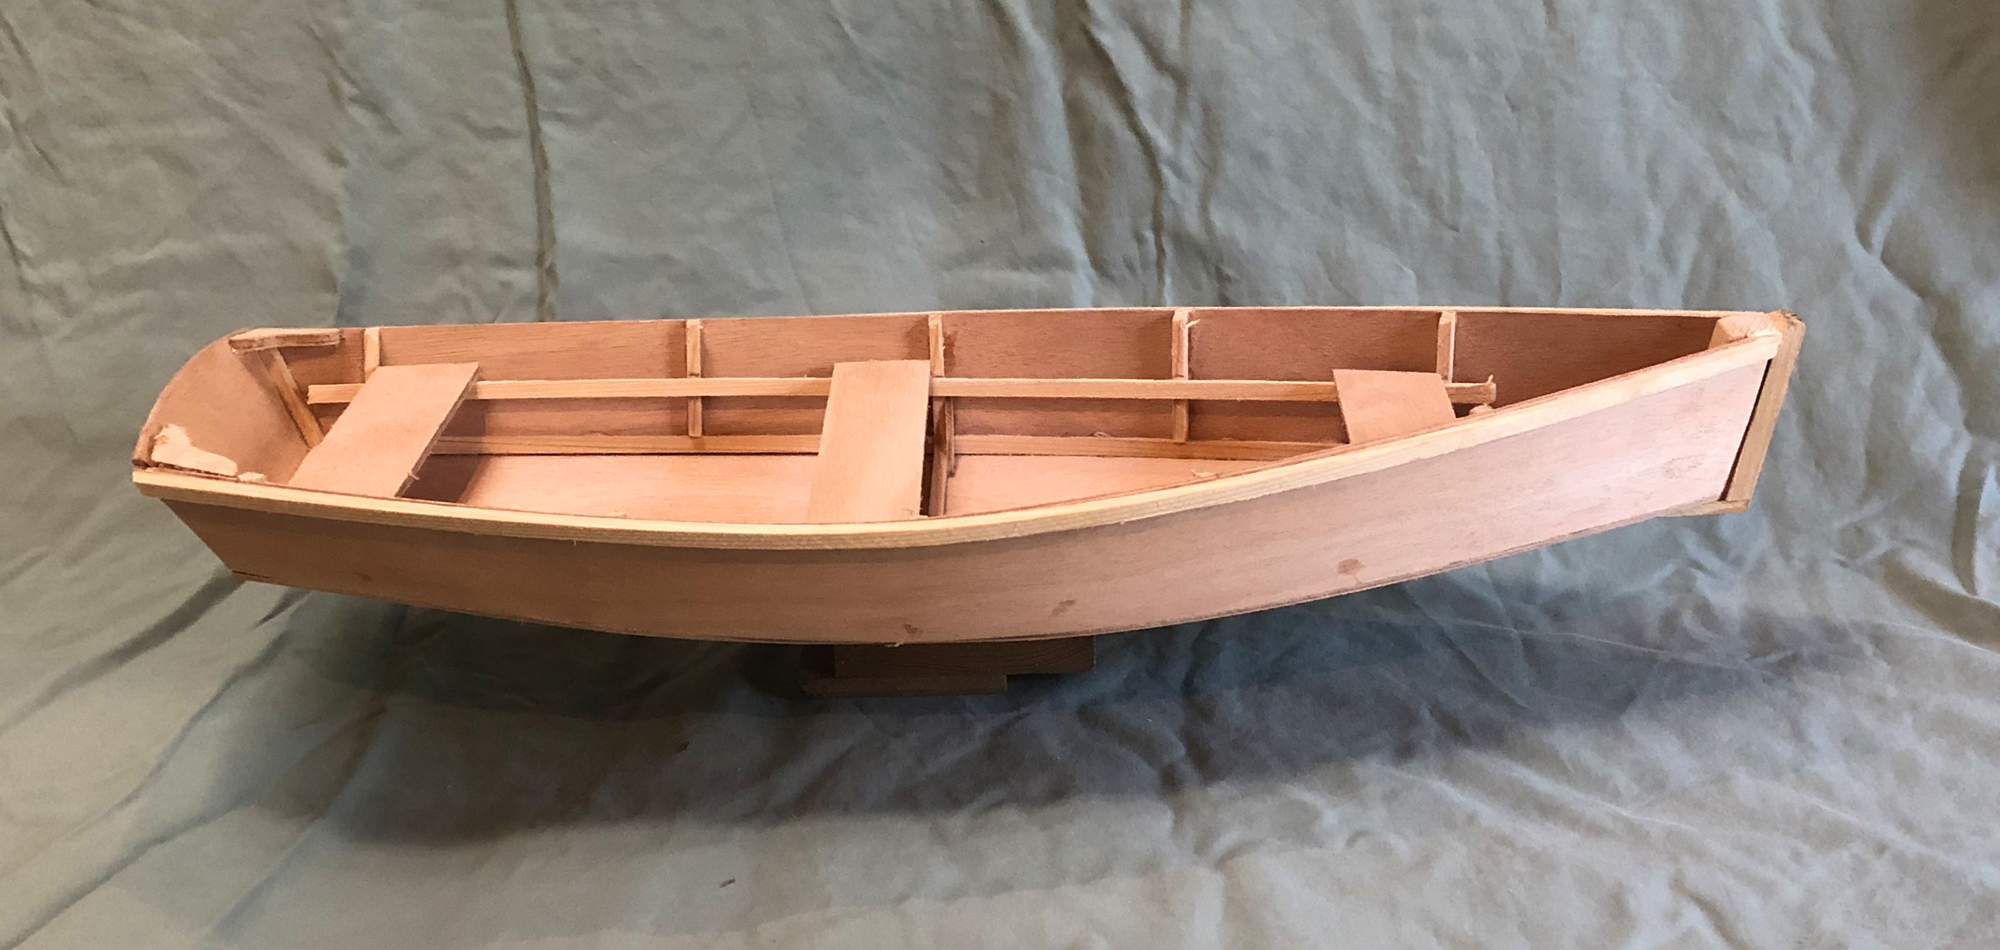 Scale Model Boat Kit for STEM Programs